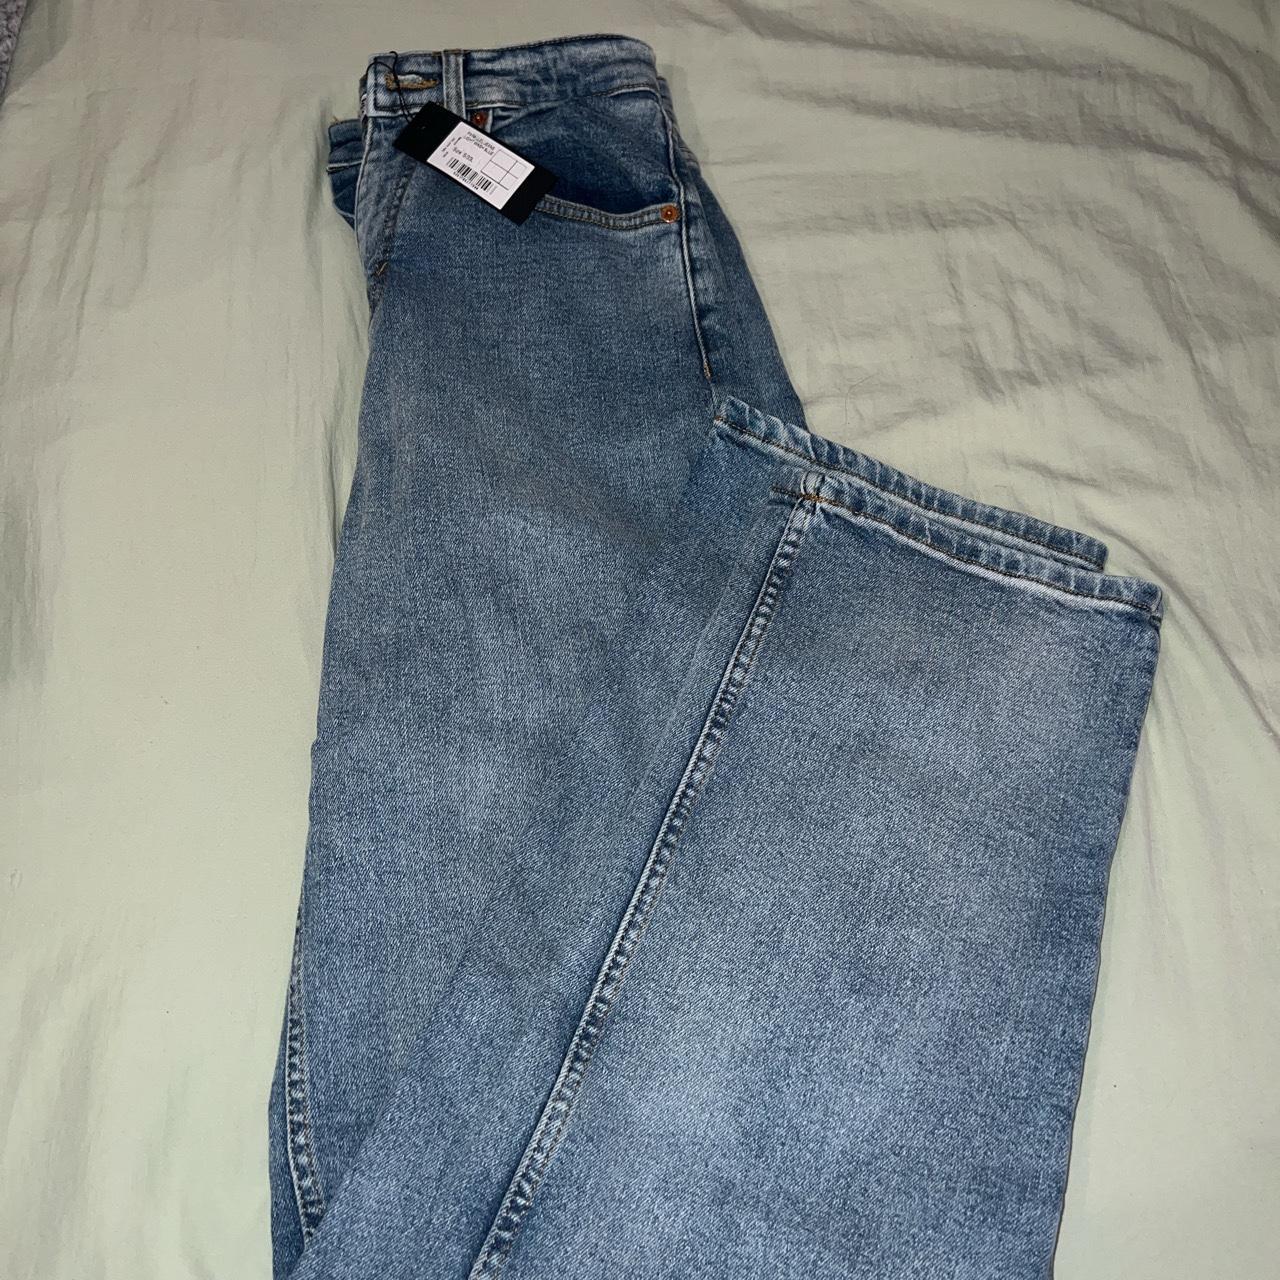 Motel rocks parallel jeans in light wash blue Size... - Depop